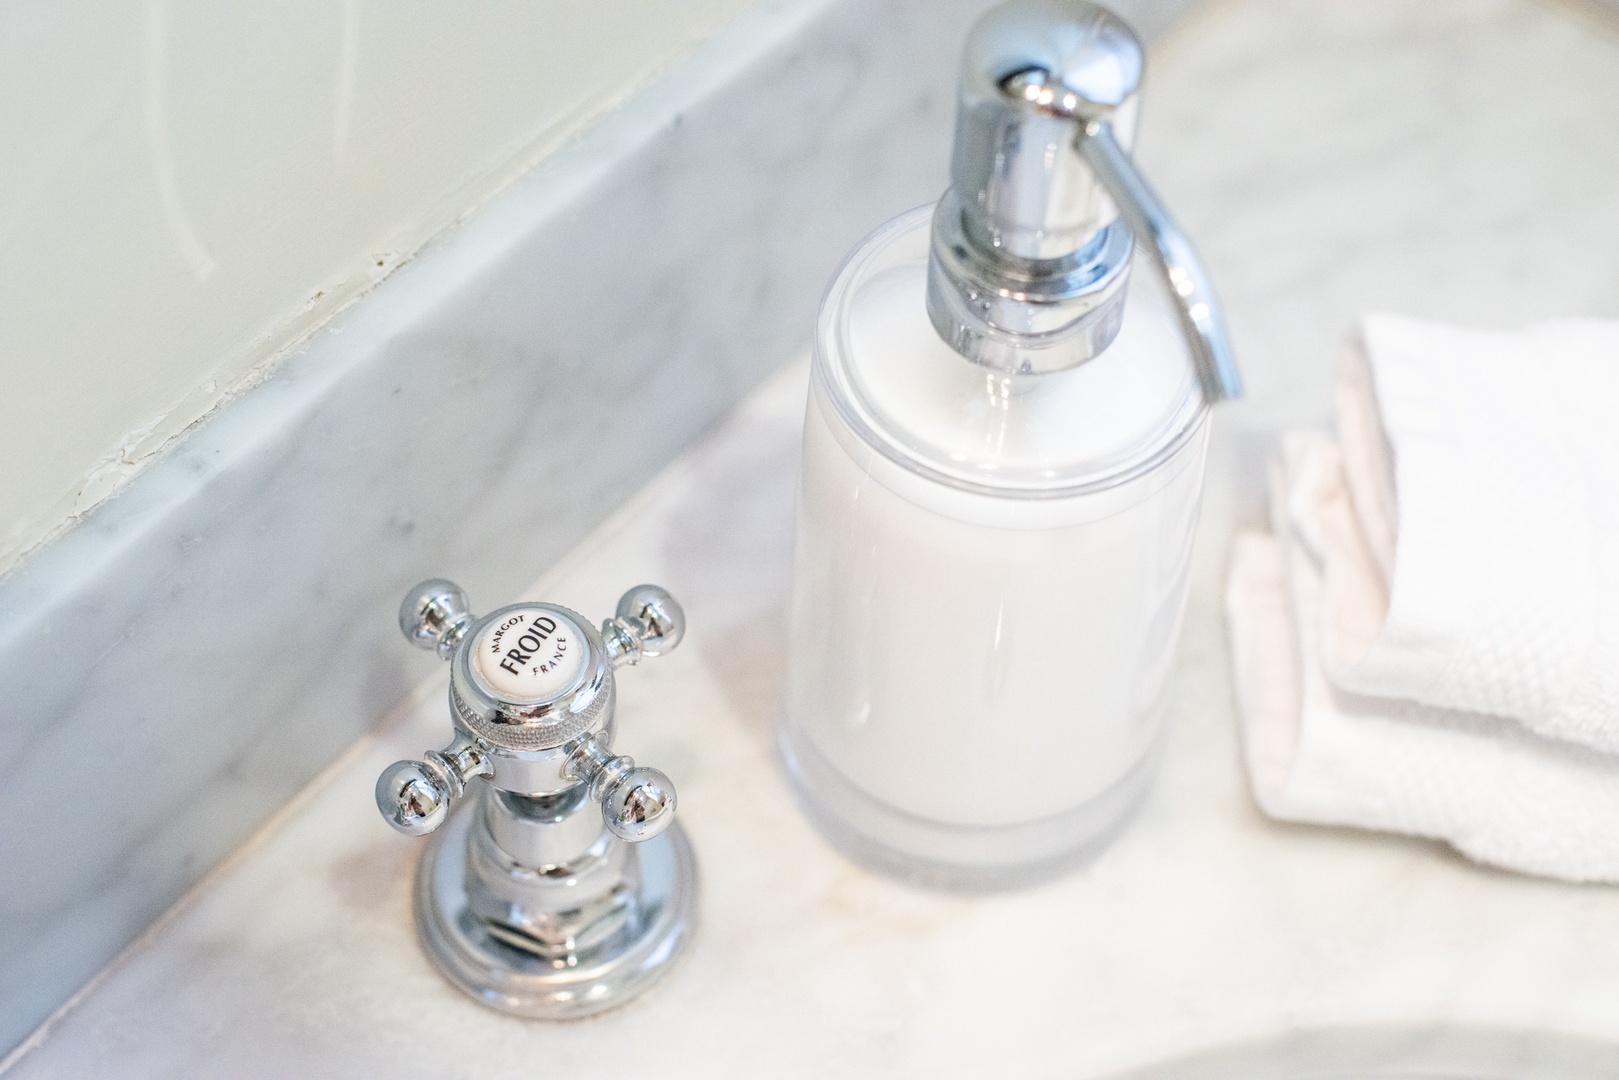 Enjoy the elegant amenities in the en suite bathroom.